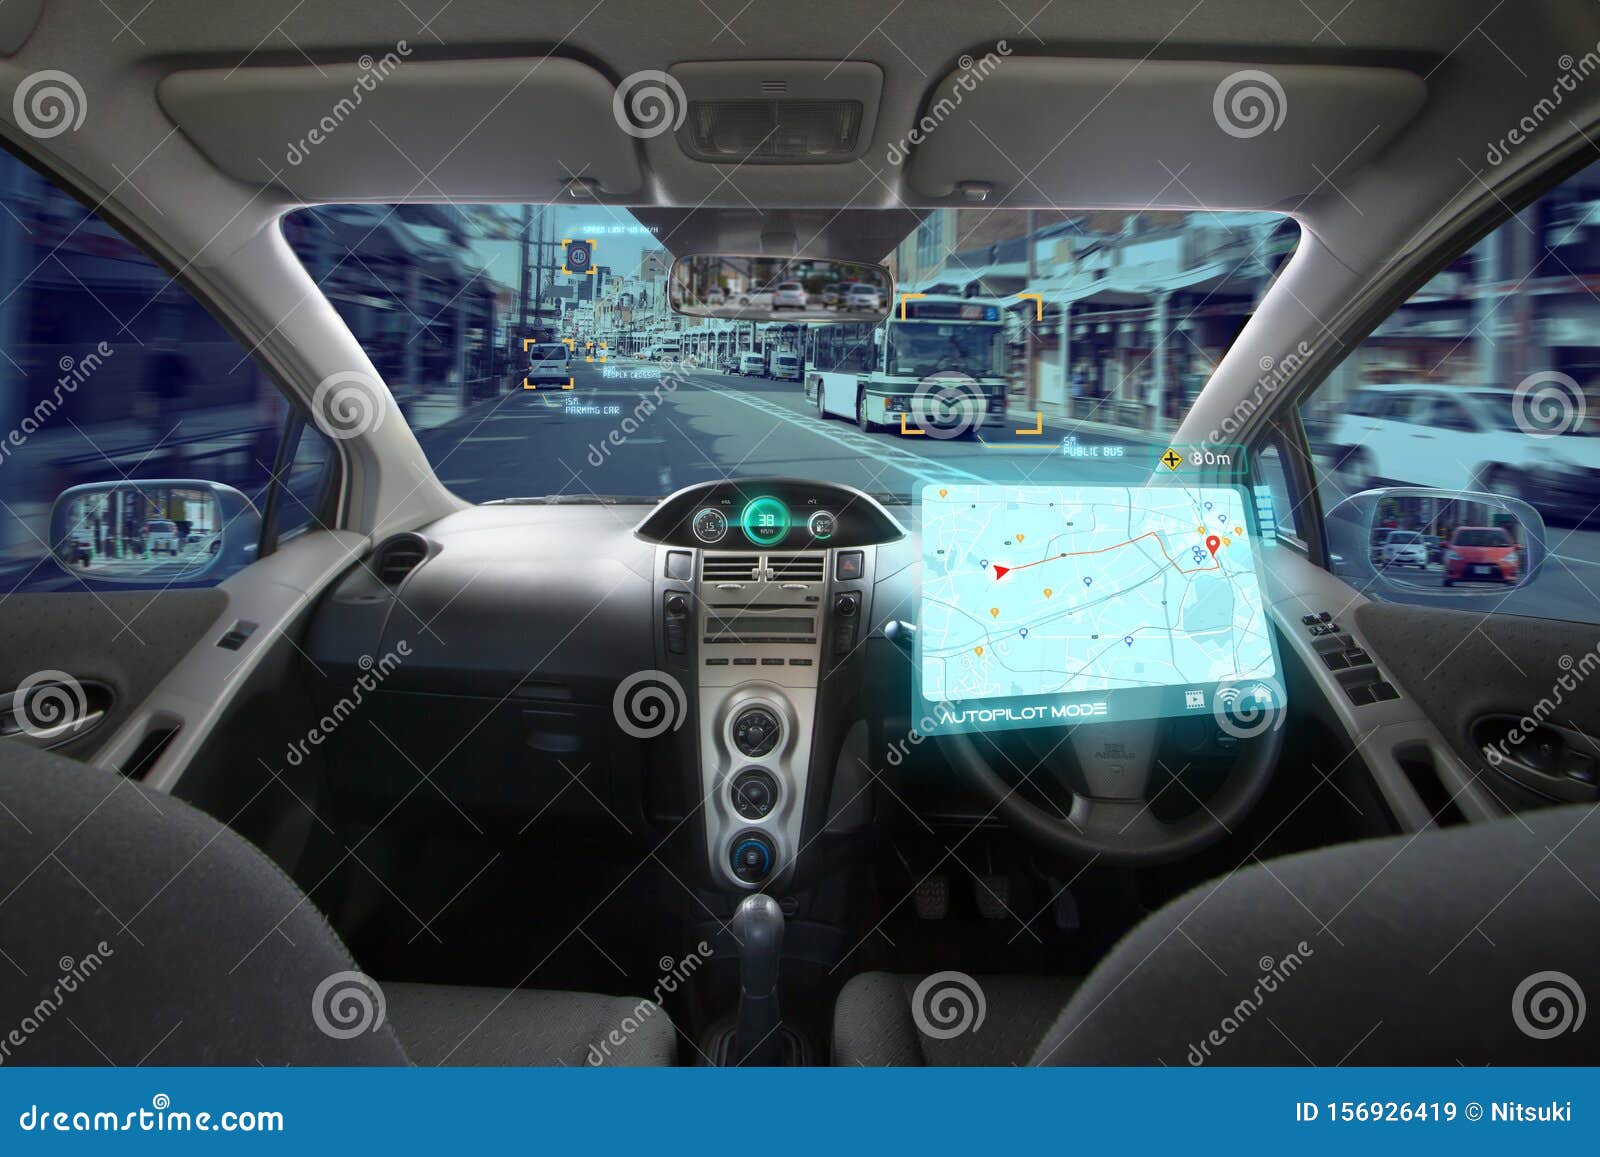 autonomous car, autopilot vehicle and ai with transport concept